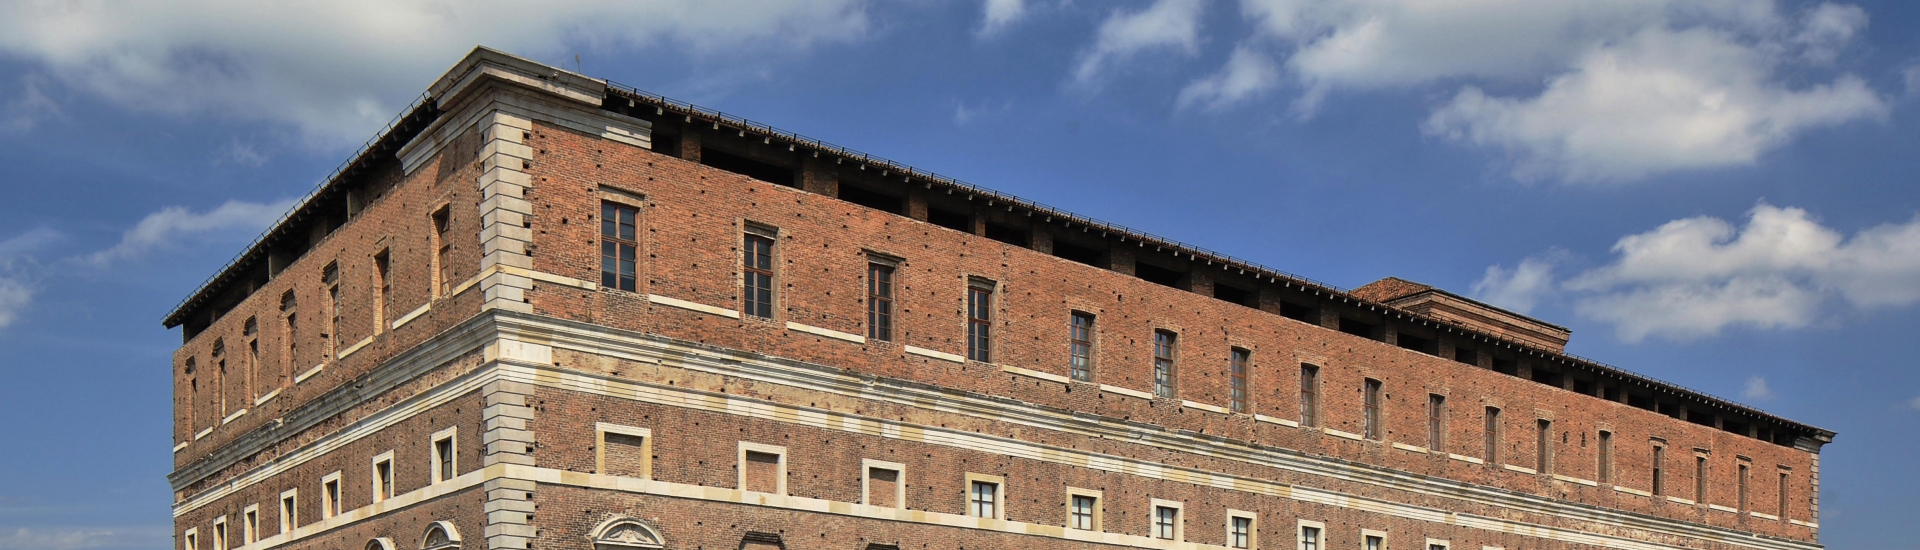 Rocca Viscontea (o Cittadella, resti) - Palazzo Farnese - Piacenza foto di: |foto Pagani| - Musei civici di Palazzo Farnese